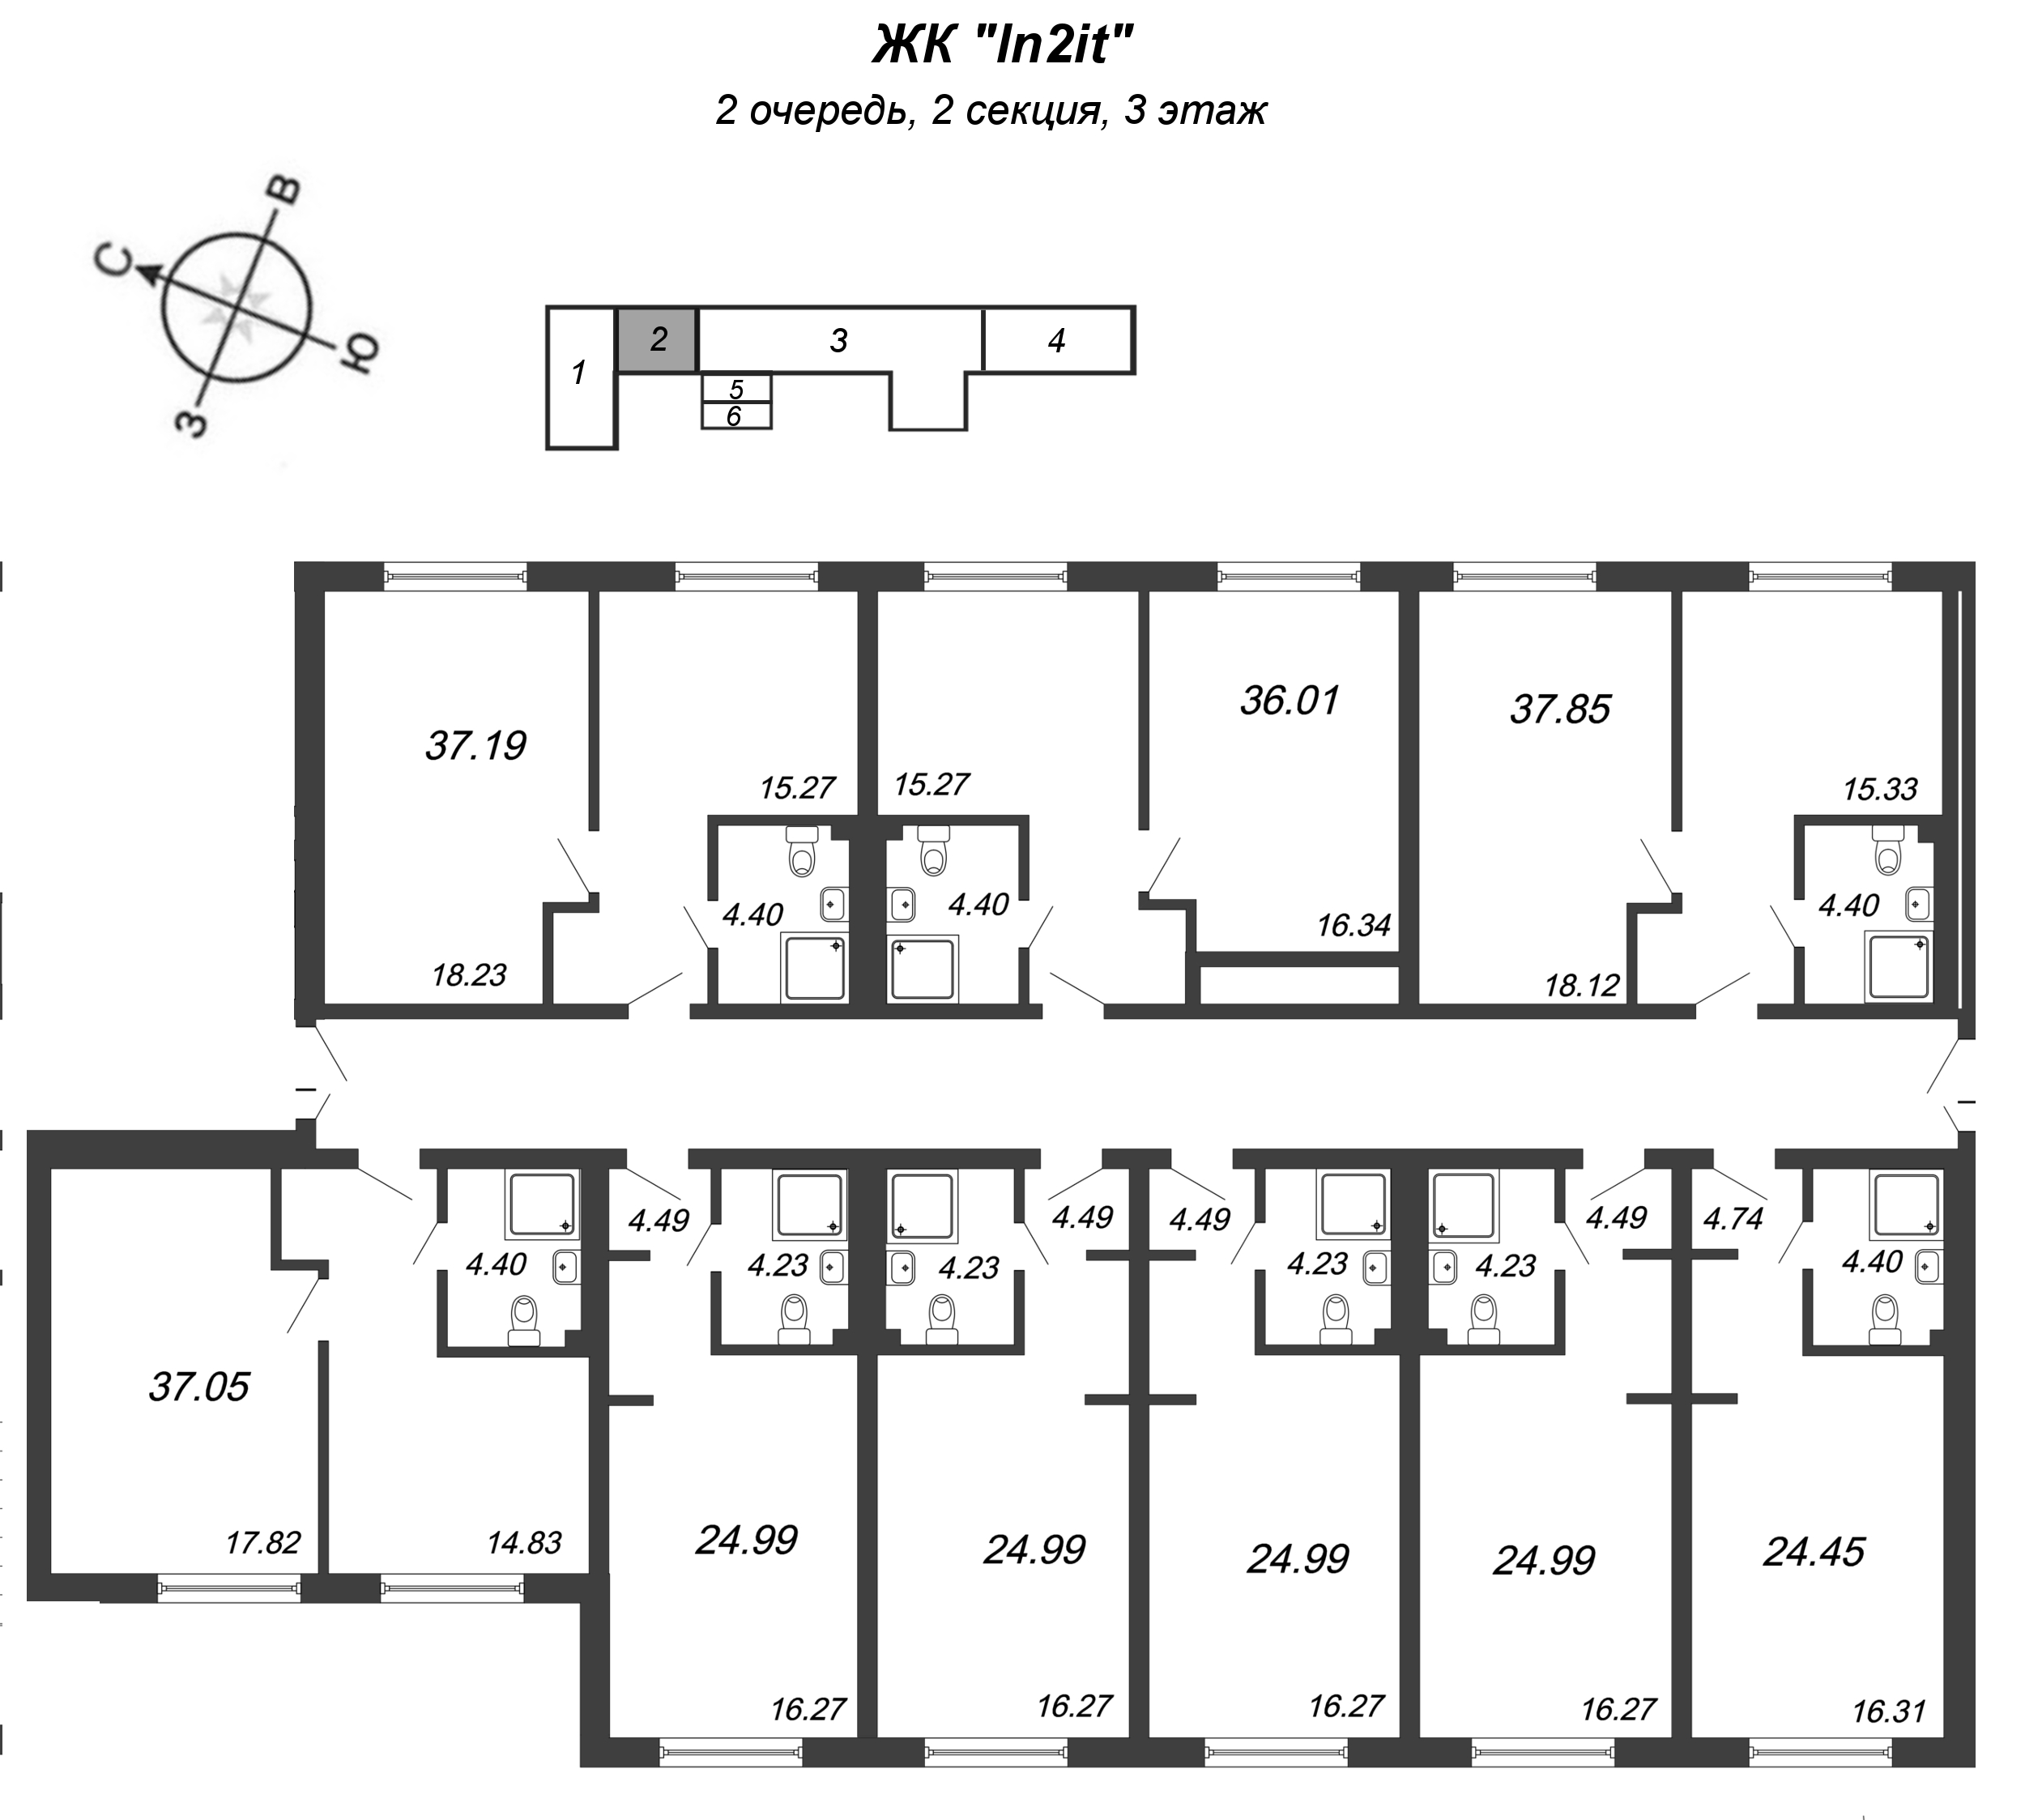 Квартира-студия, 24.99 м² в ЖК "In2it" - планировка этажа